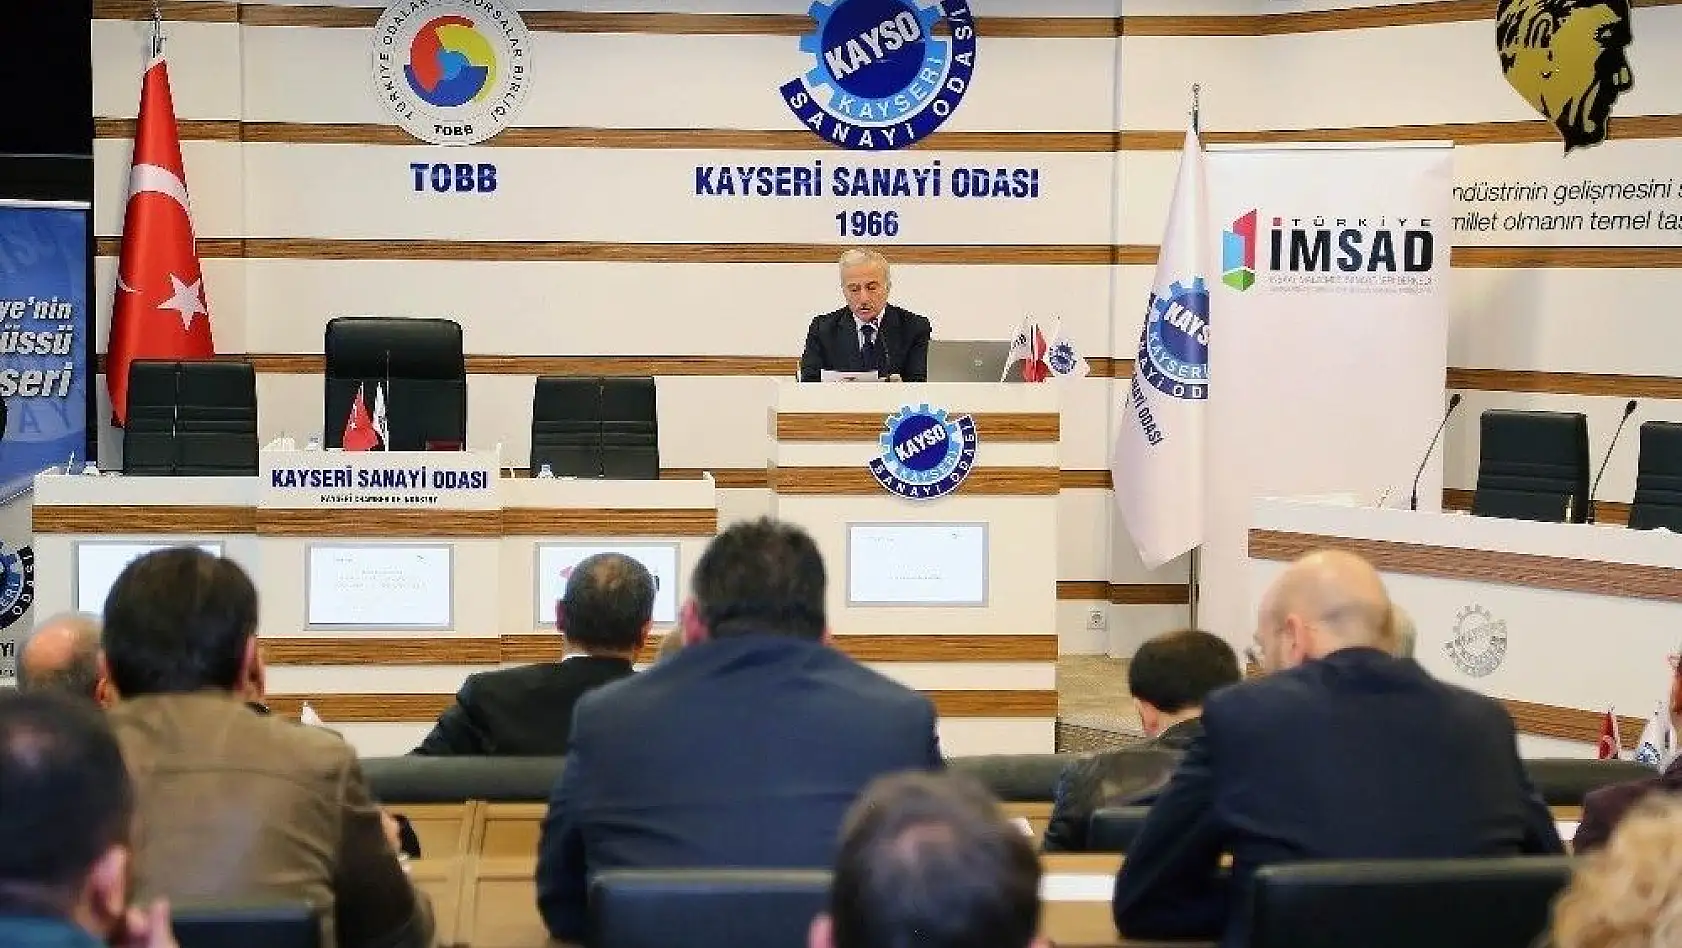 İMSAD'Anadolu Buluşmaları'nın dördüncüsü Kayseri'de düzenlendi
